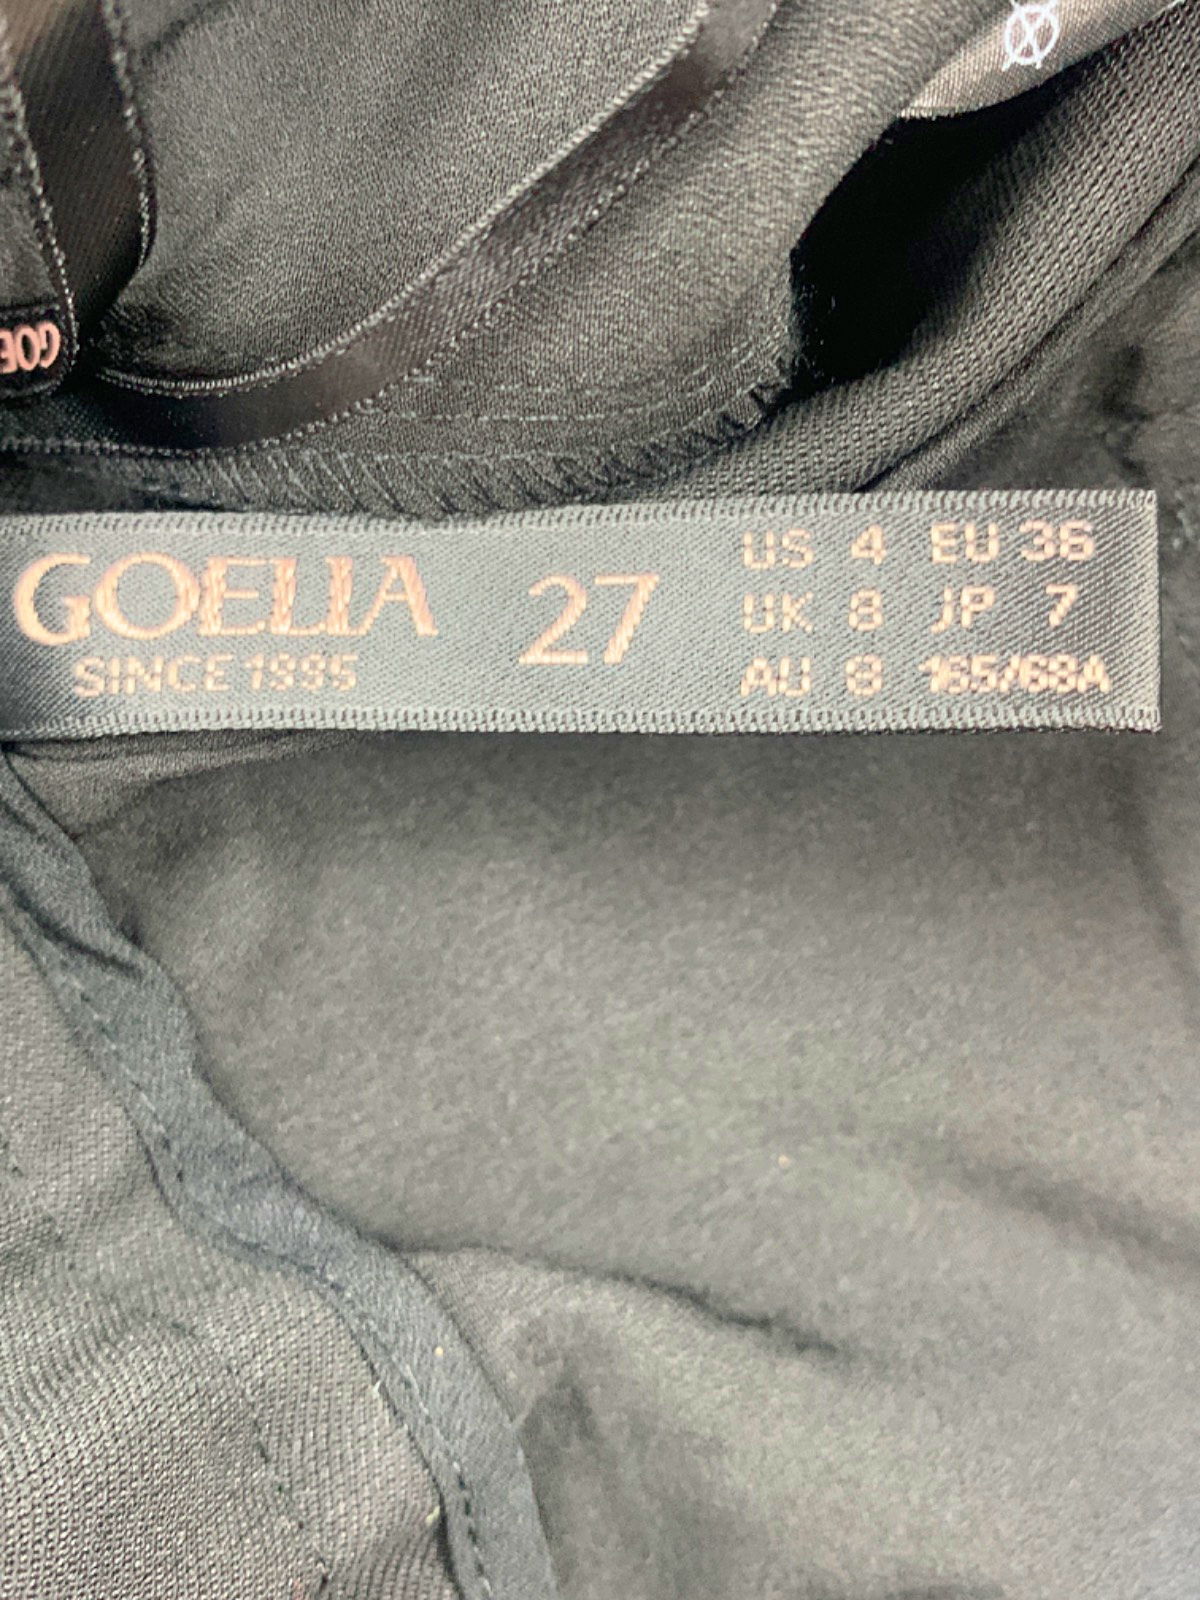 Goelia Black Pleated High-Waist Shorts with Belt UK 8